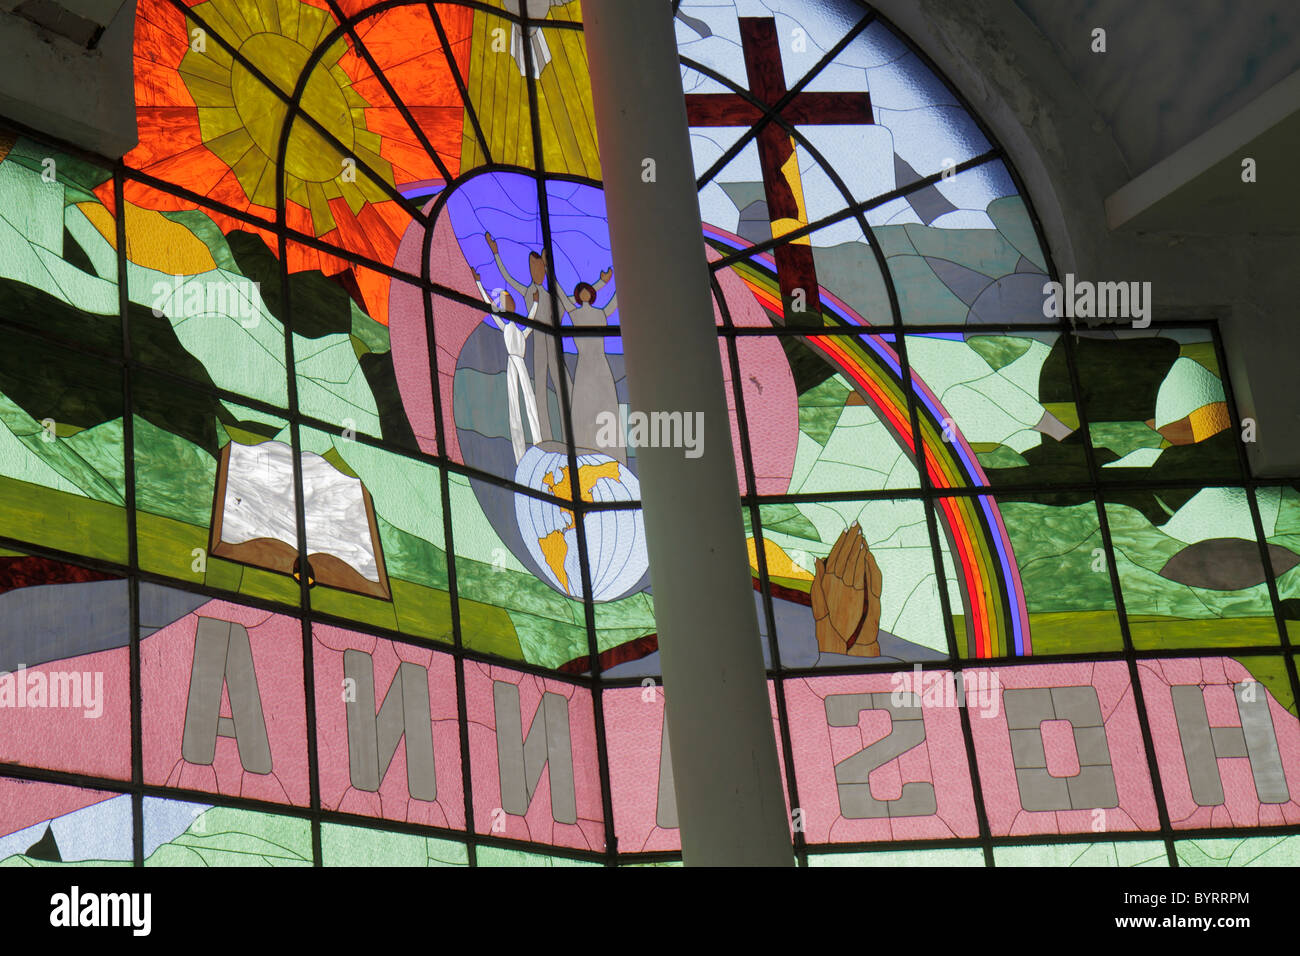 Avivamiento cristiano fotografías e imágenes de alta resolución - Alamy